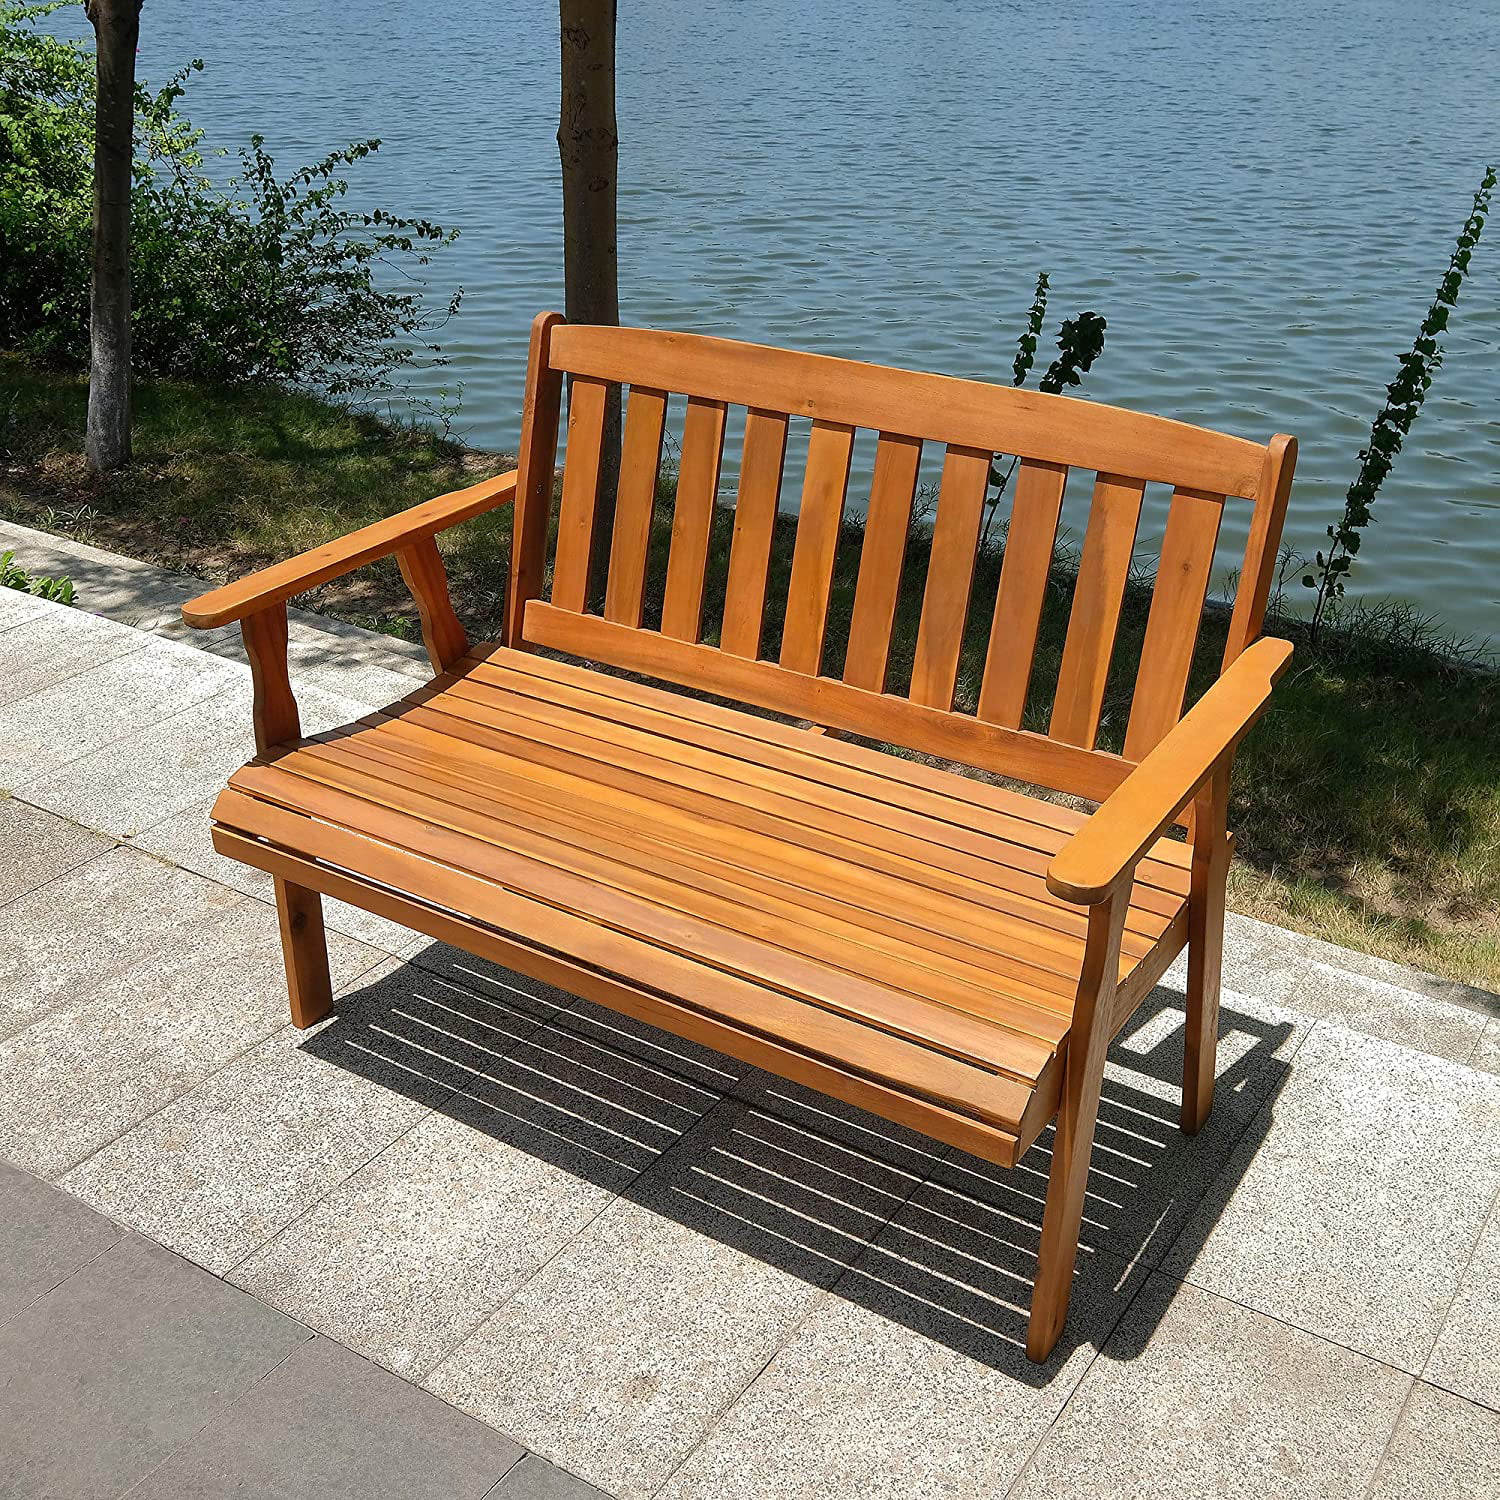  bench garden furniture